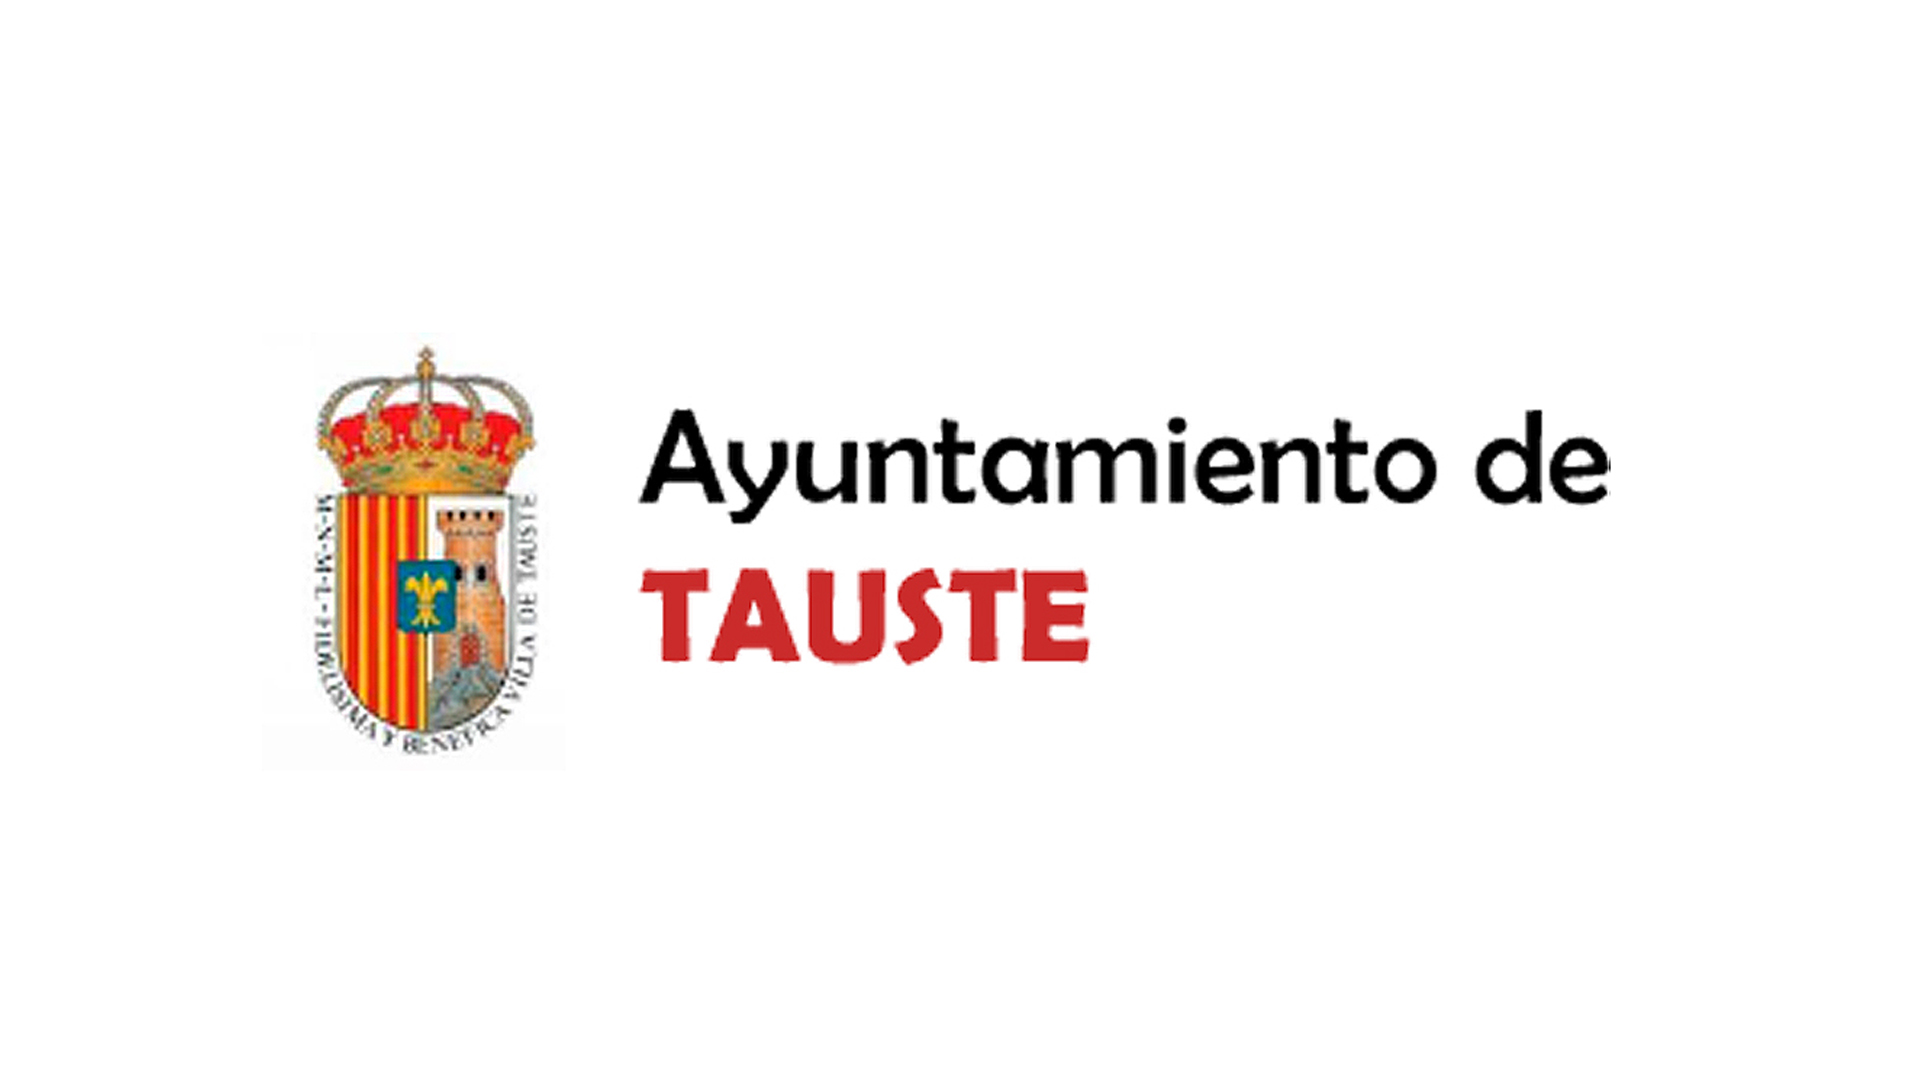 Ayuntamiento de Tauste - Clientes de ESMAS Gestión Deportiva